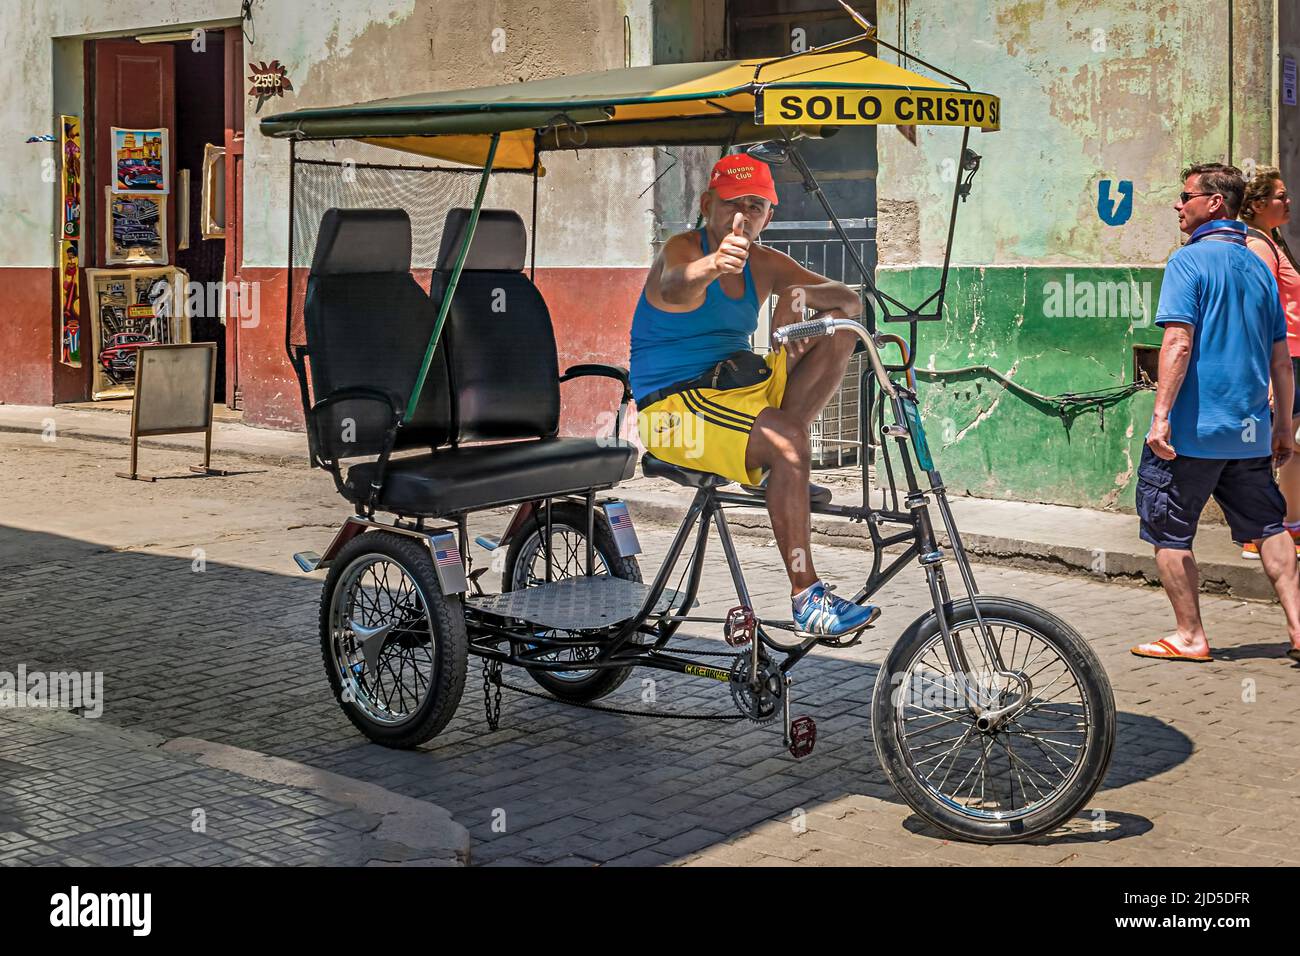 Un vecchio che guida il veicolo di trasporto più comune di Old Havana, un Bicitaxi Foto Stock